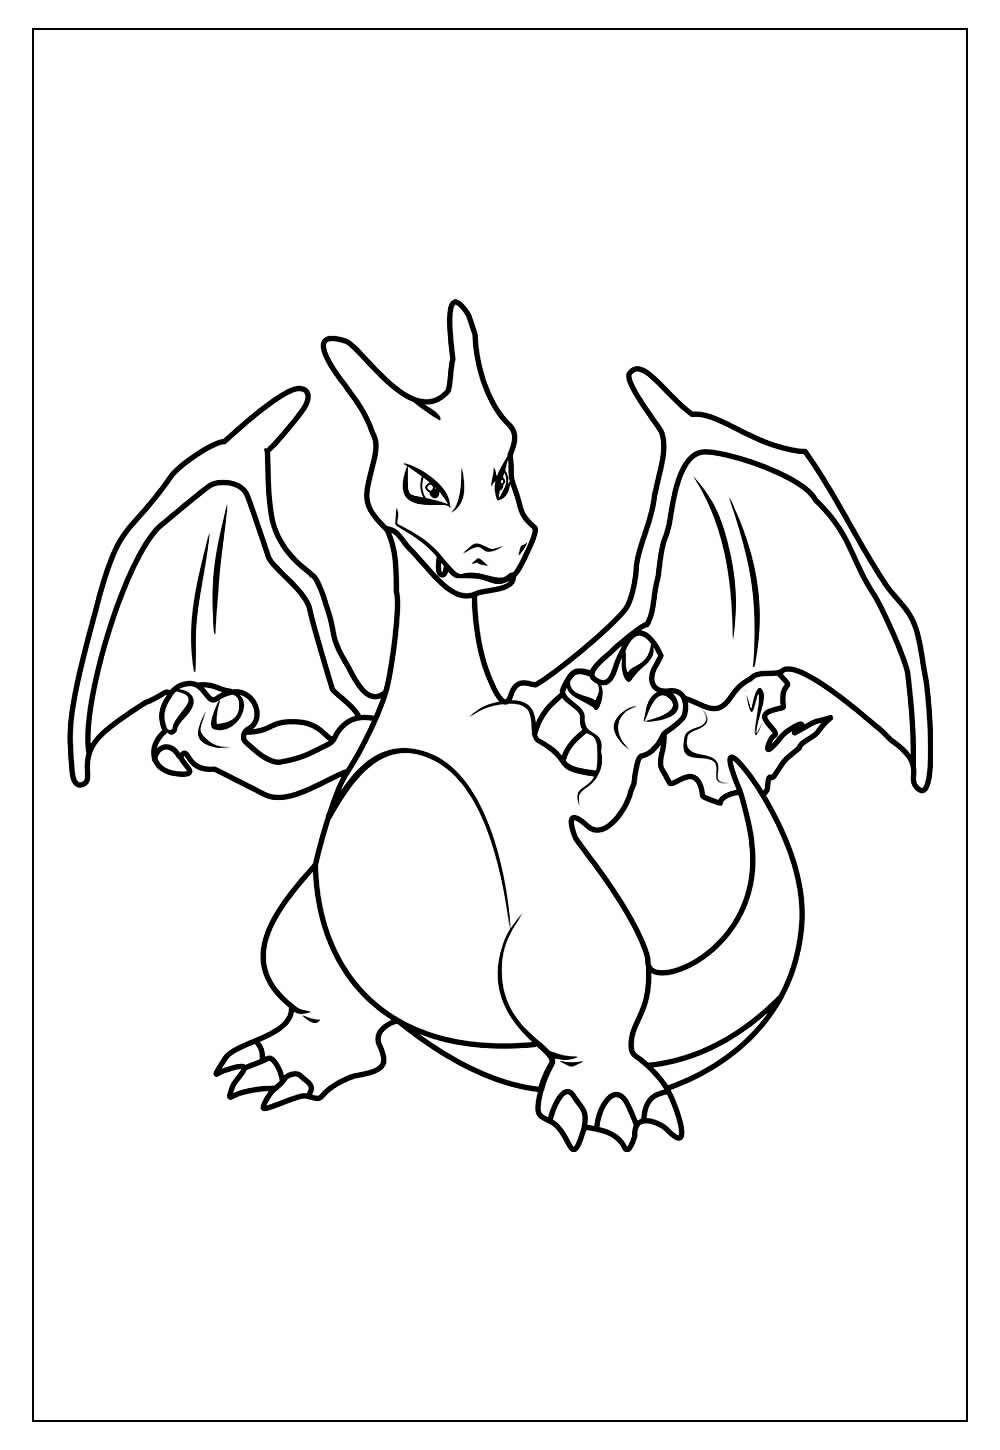 Desenho do Pokémon para colorir